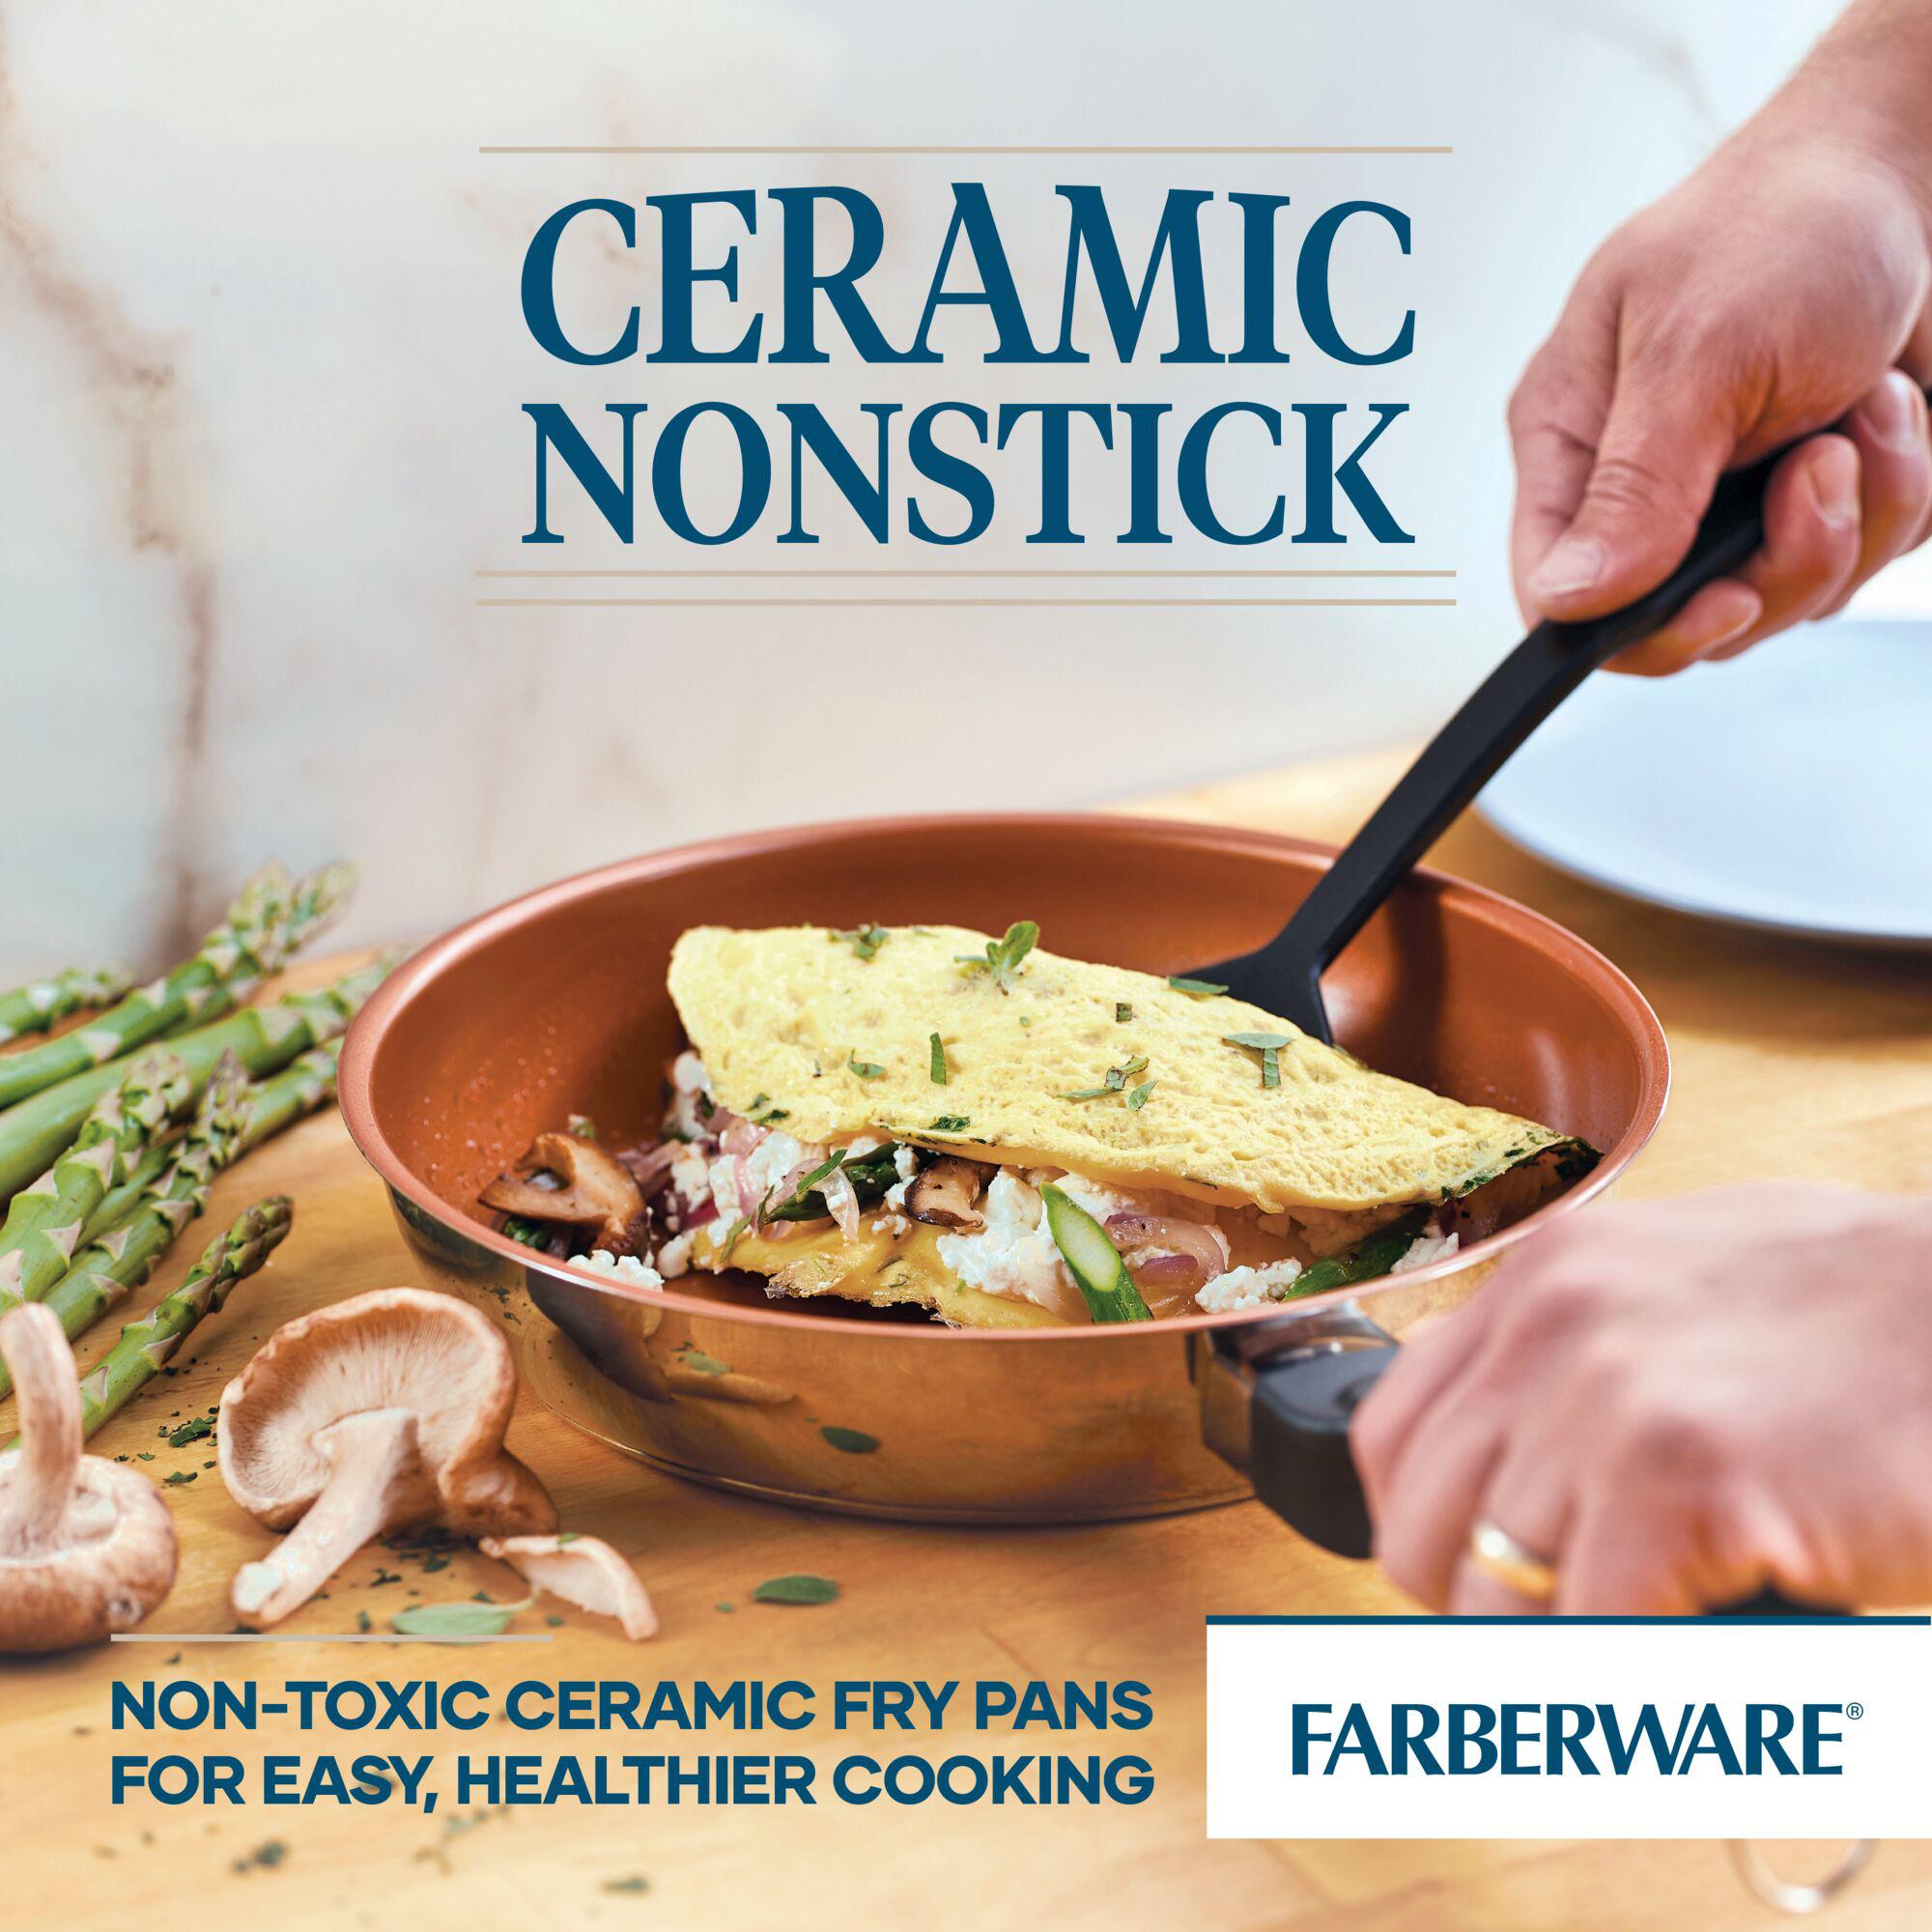 Farberware 12-Piece purECOok Ceramic Nonstick Cookware Set - Aqua